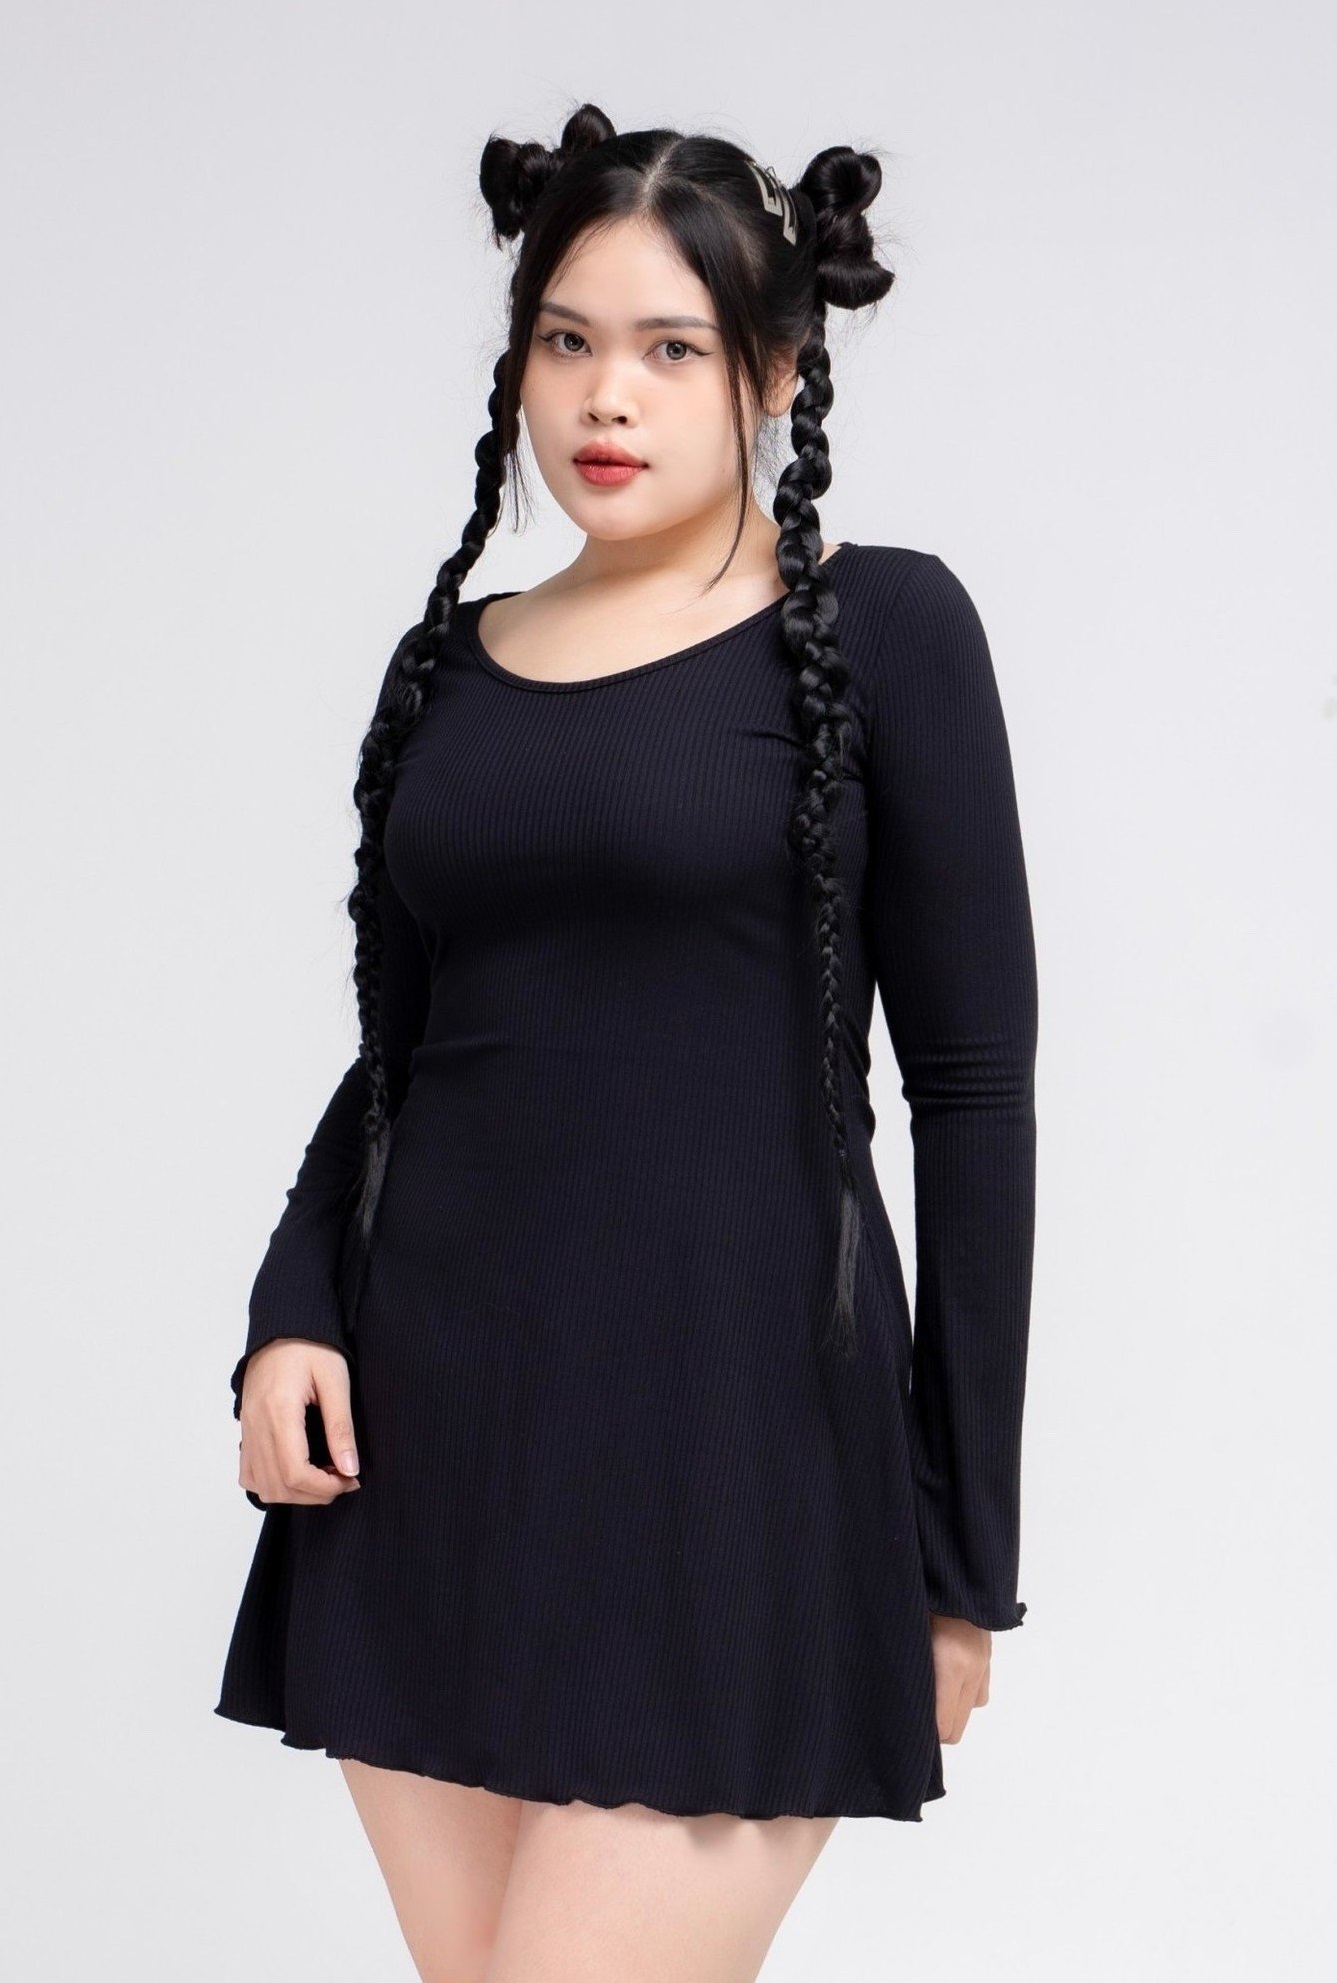 20+ Mẫu Váy Cho Người Béo Gầy Đi Trong Tích Tắc | Mẹo Chọn Đồ Chuẩn Stylist